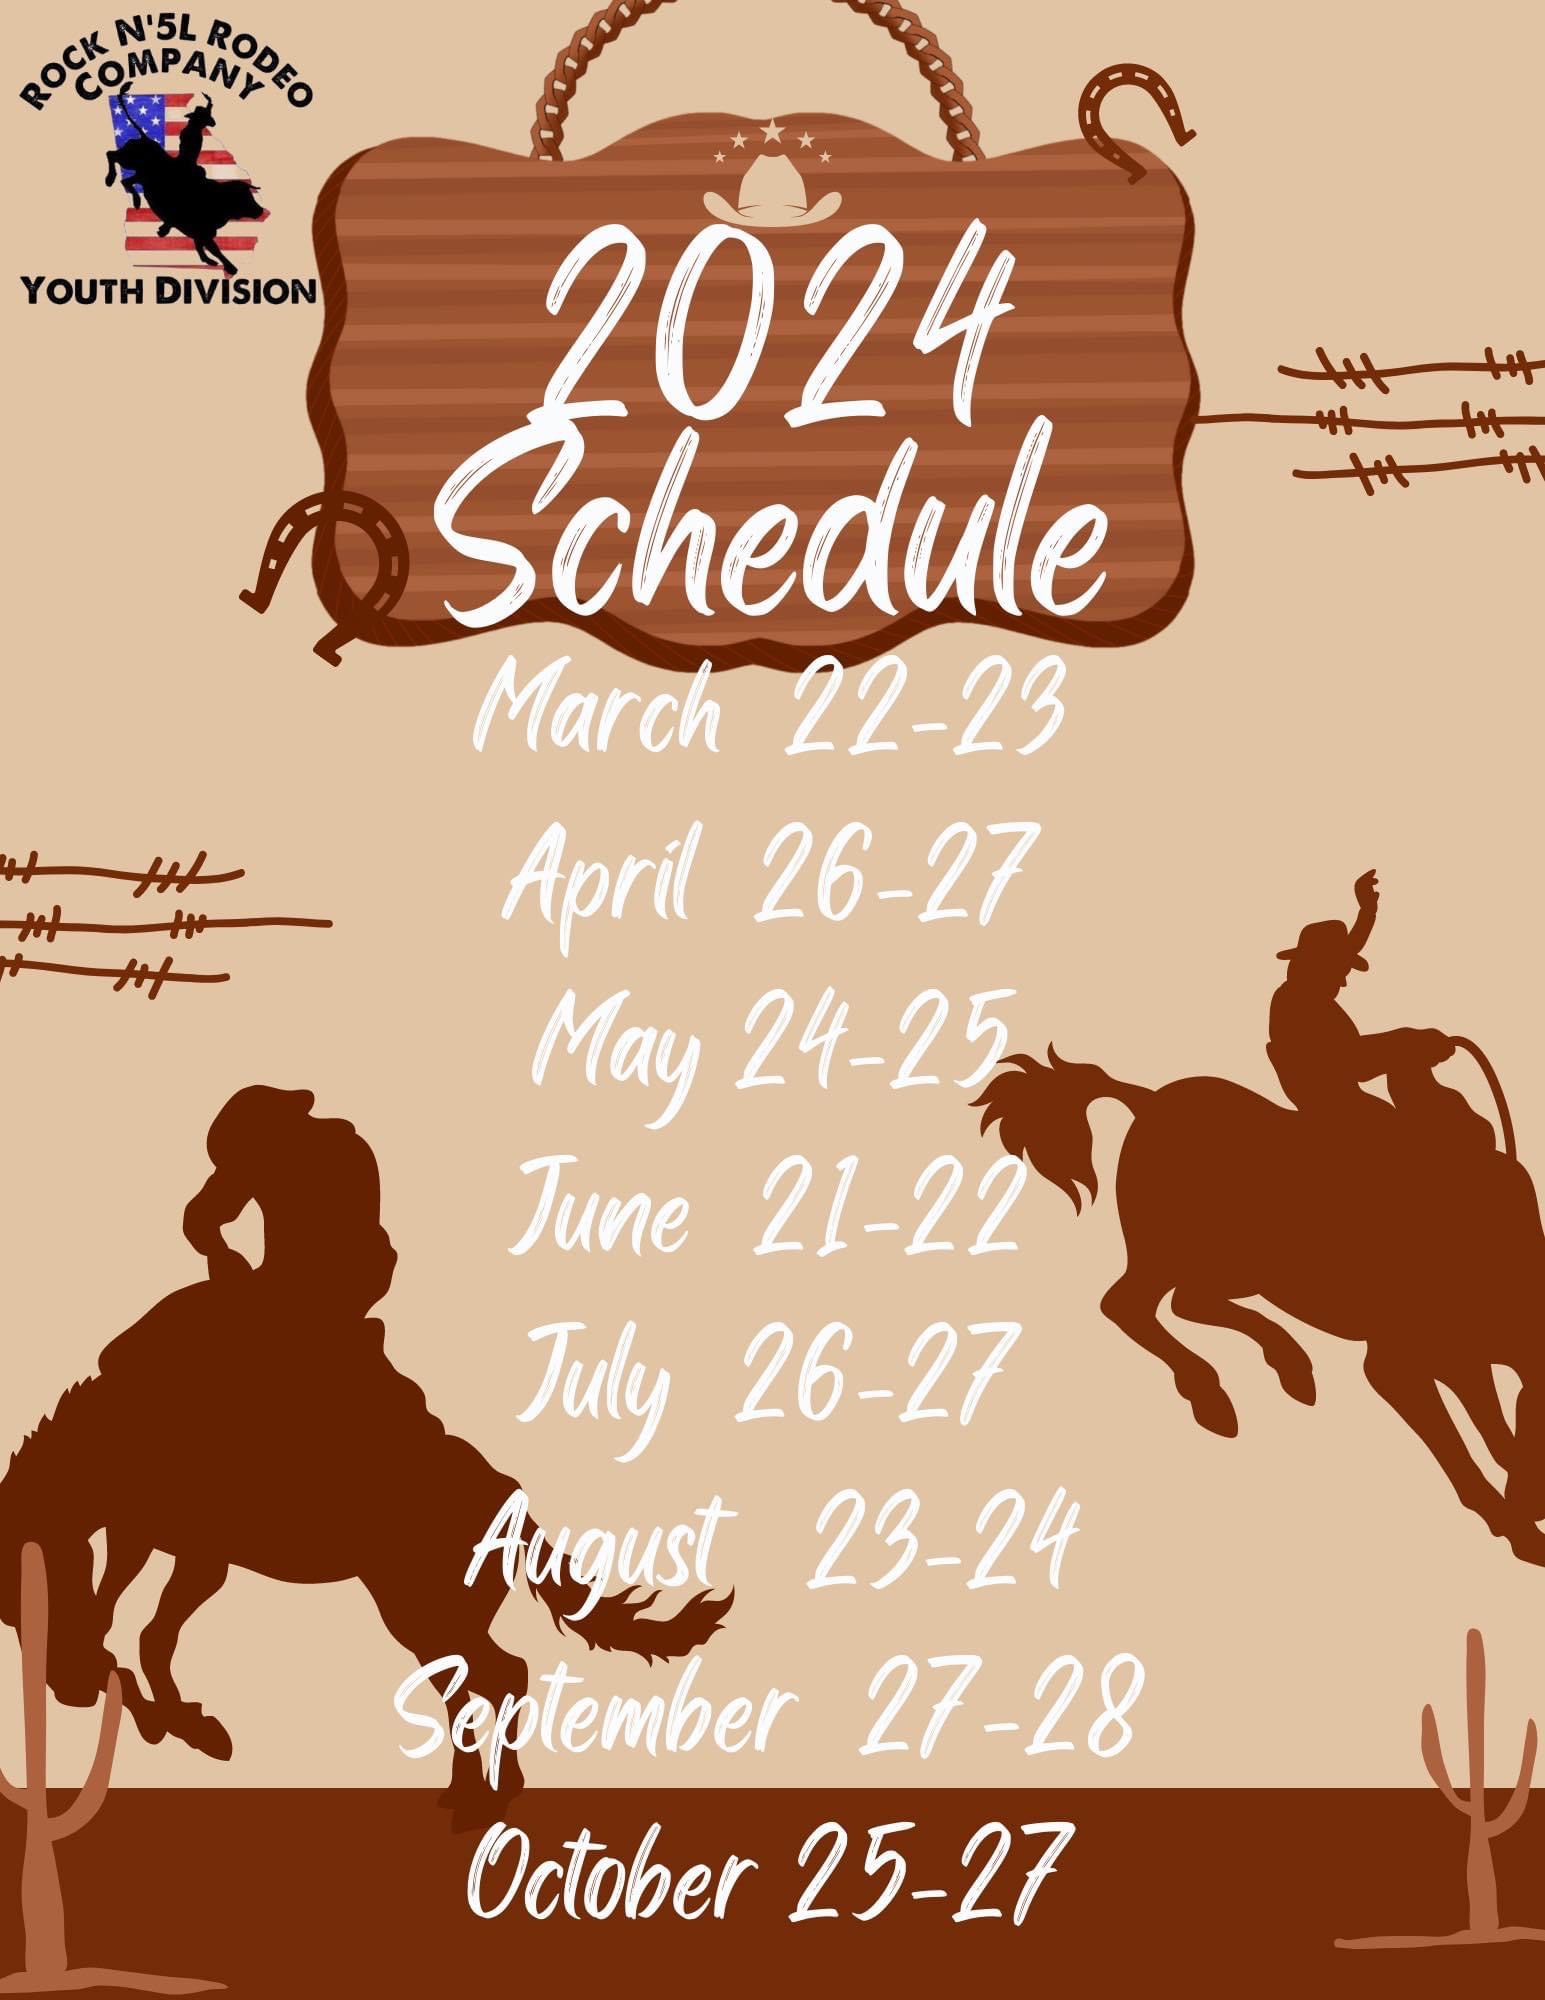 Schedule RockN'5L Rodeo Company